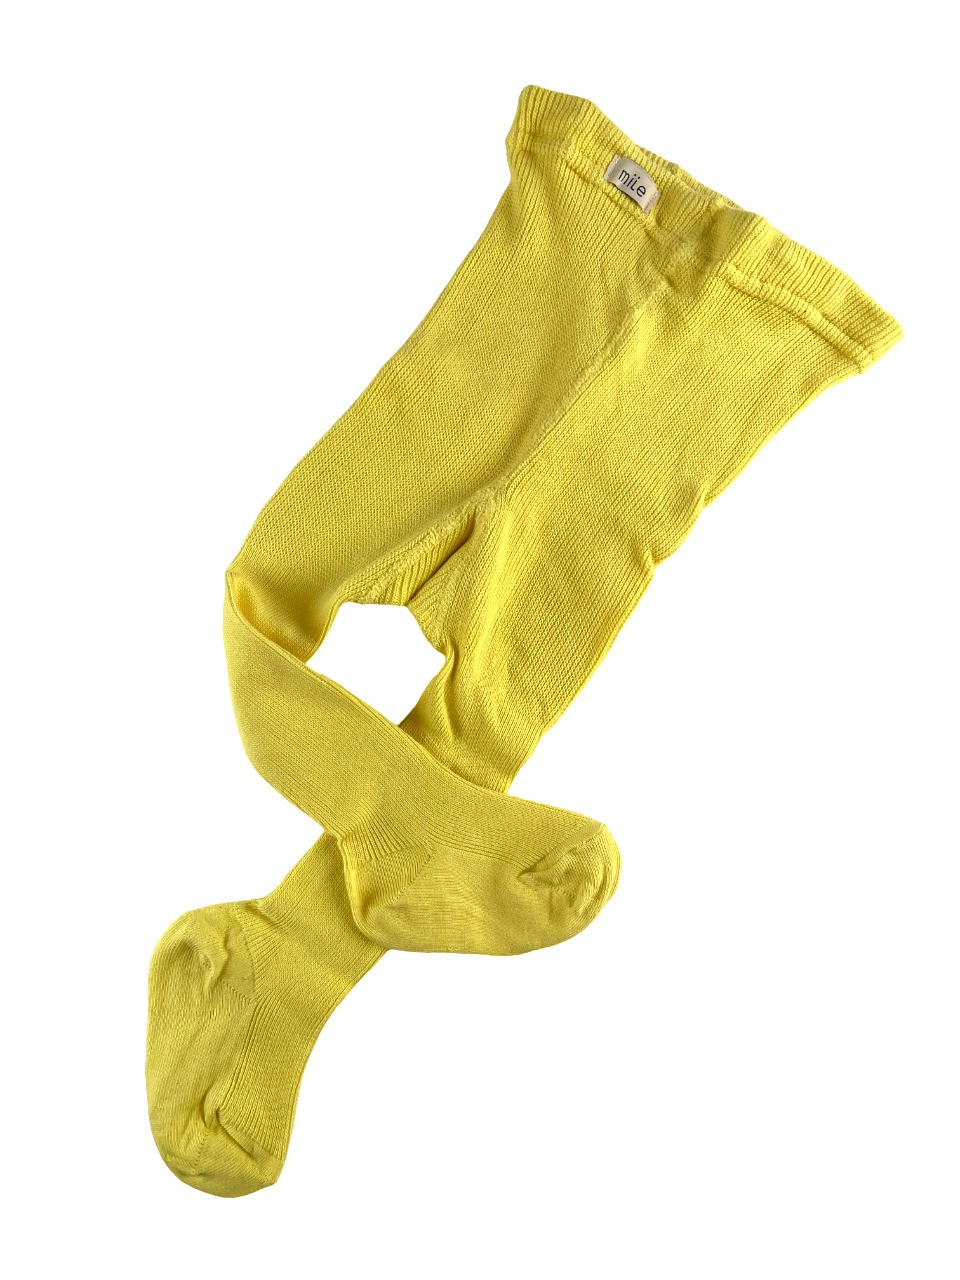 Stockings, yellow